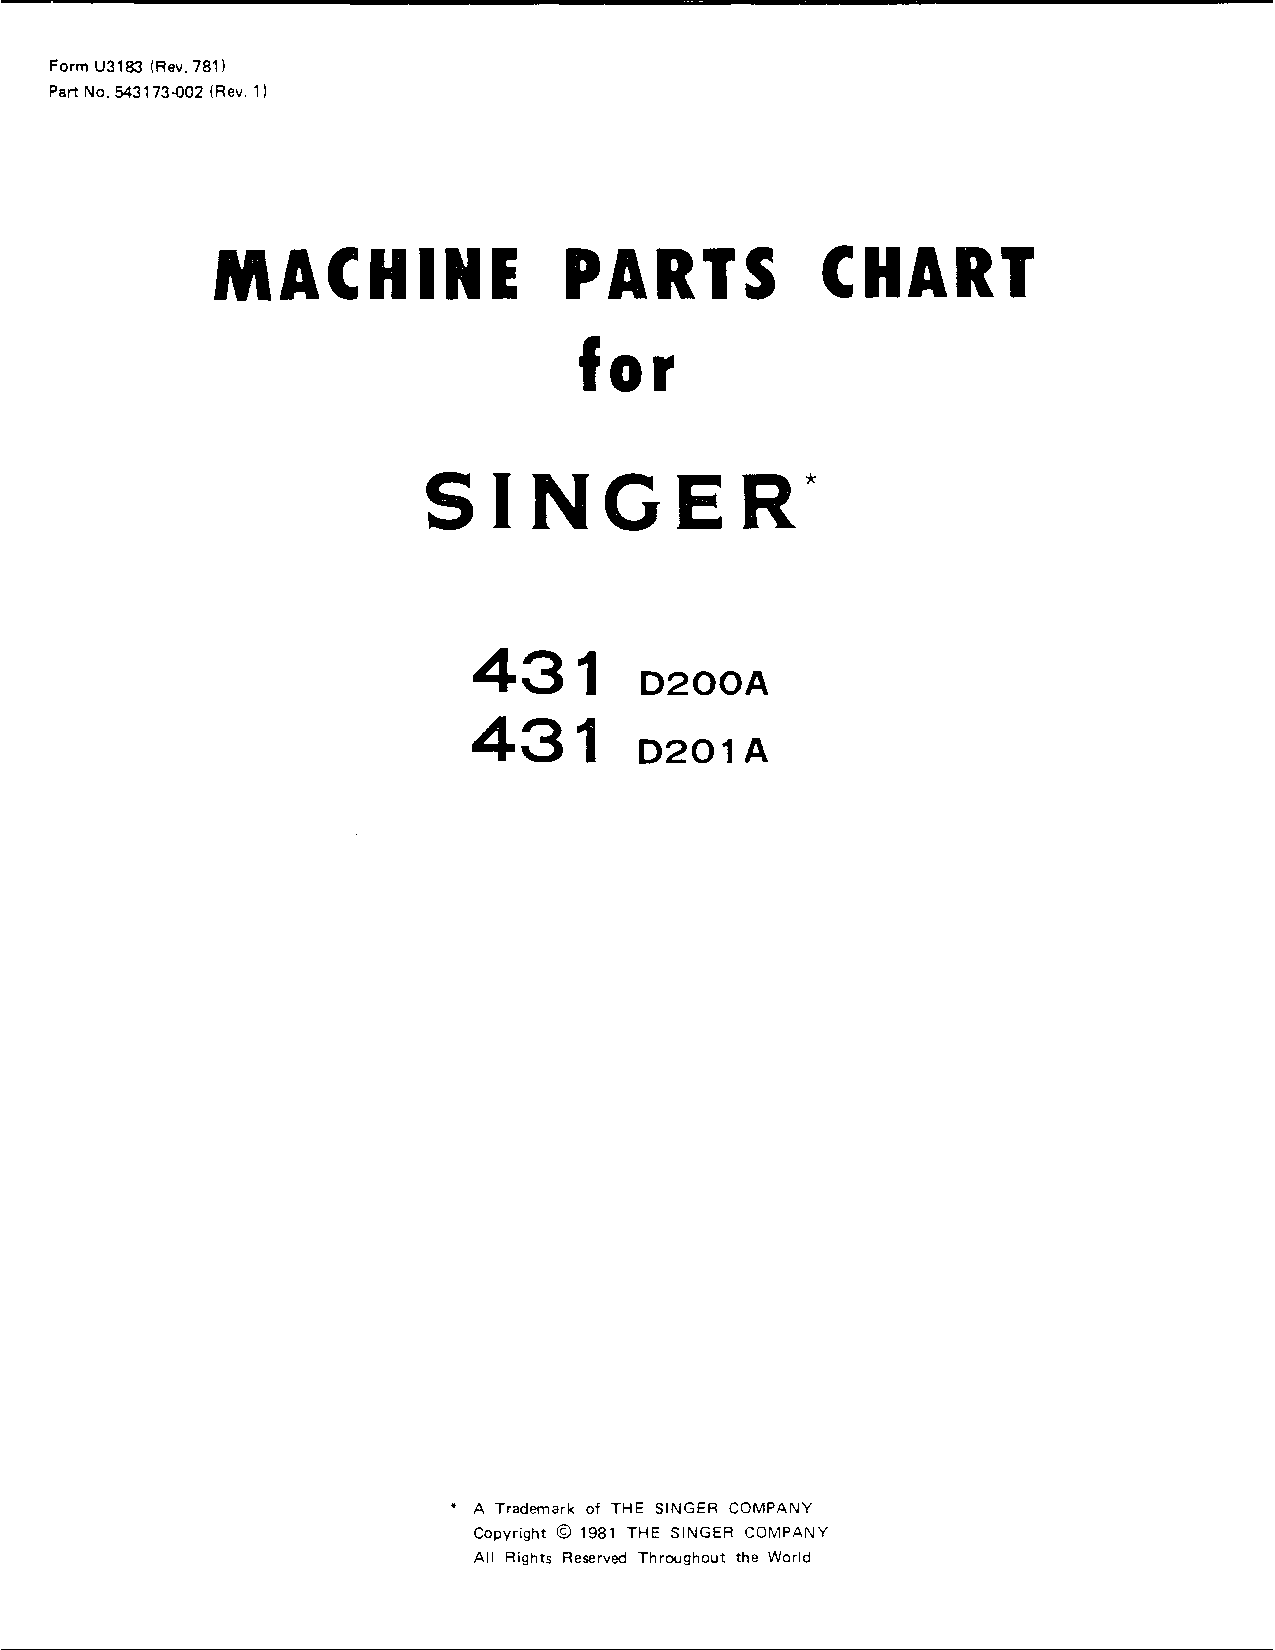 Singer 431D 200A, 431D 201A User Manual